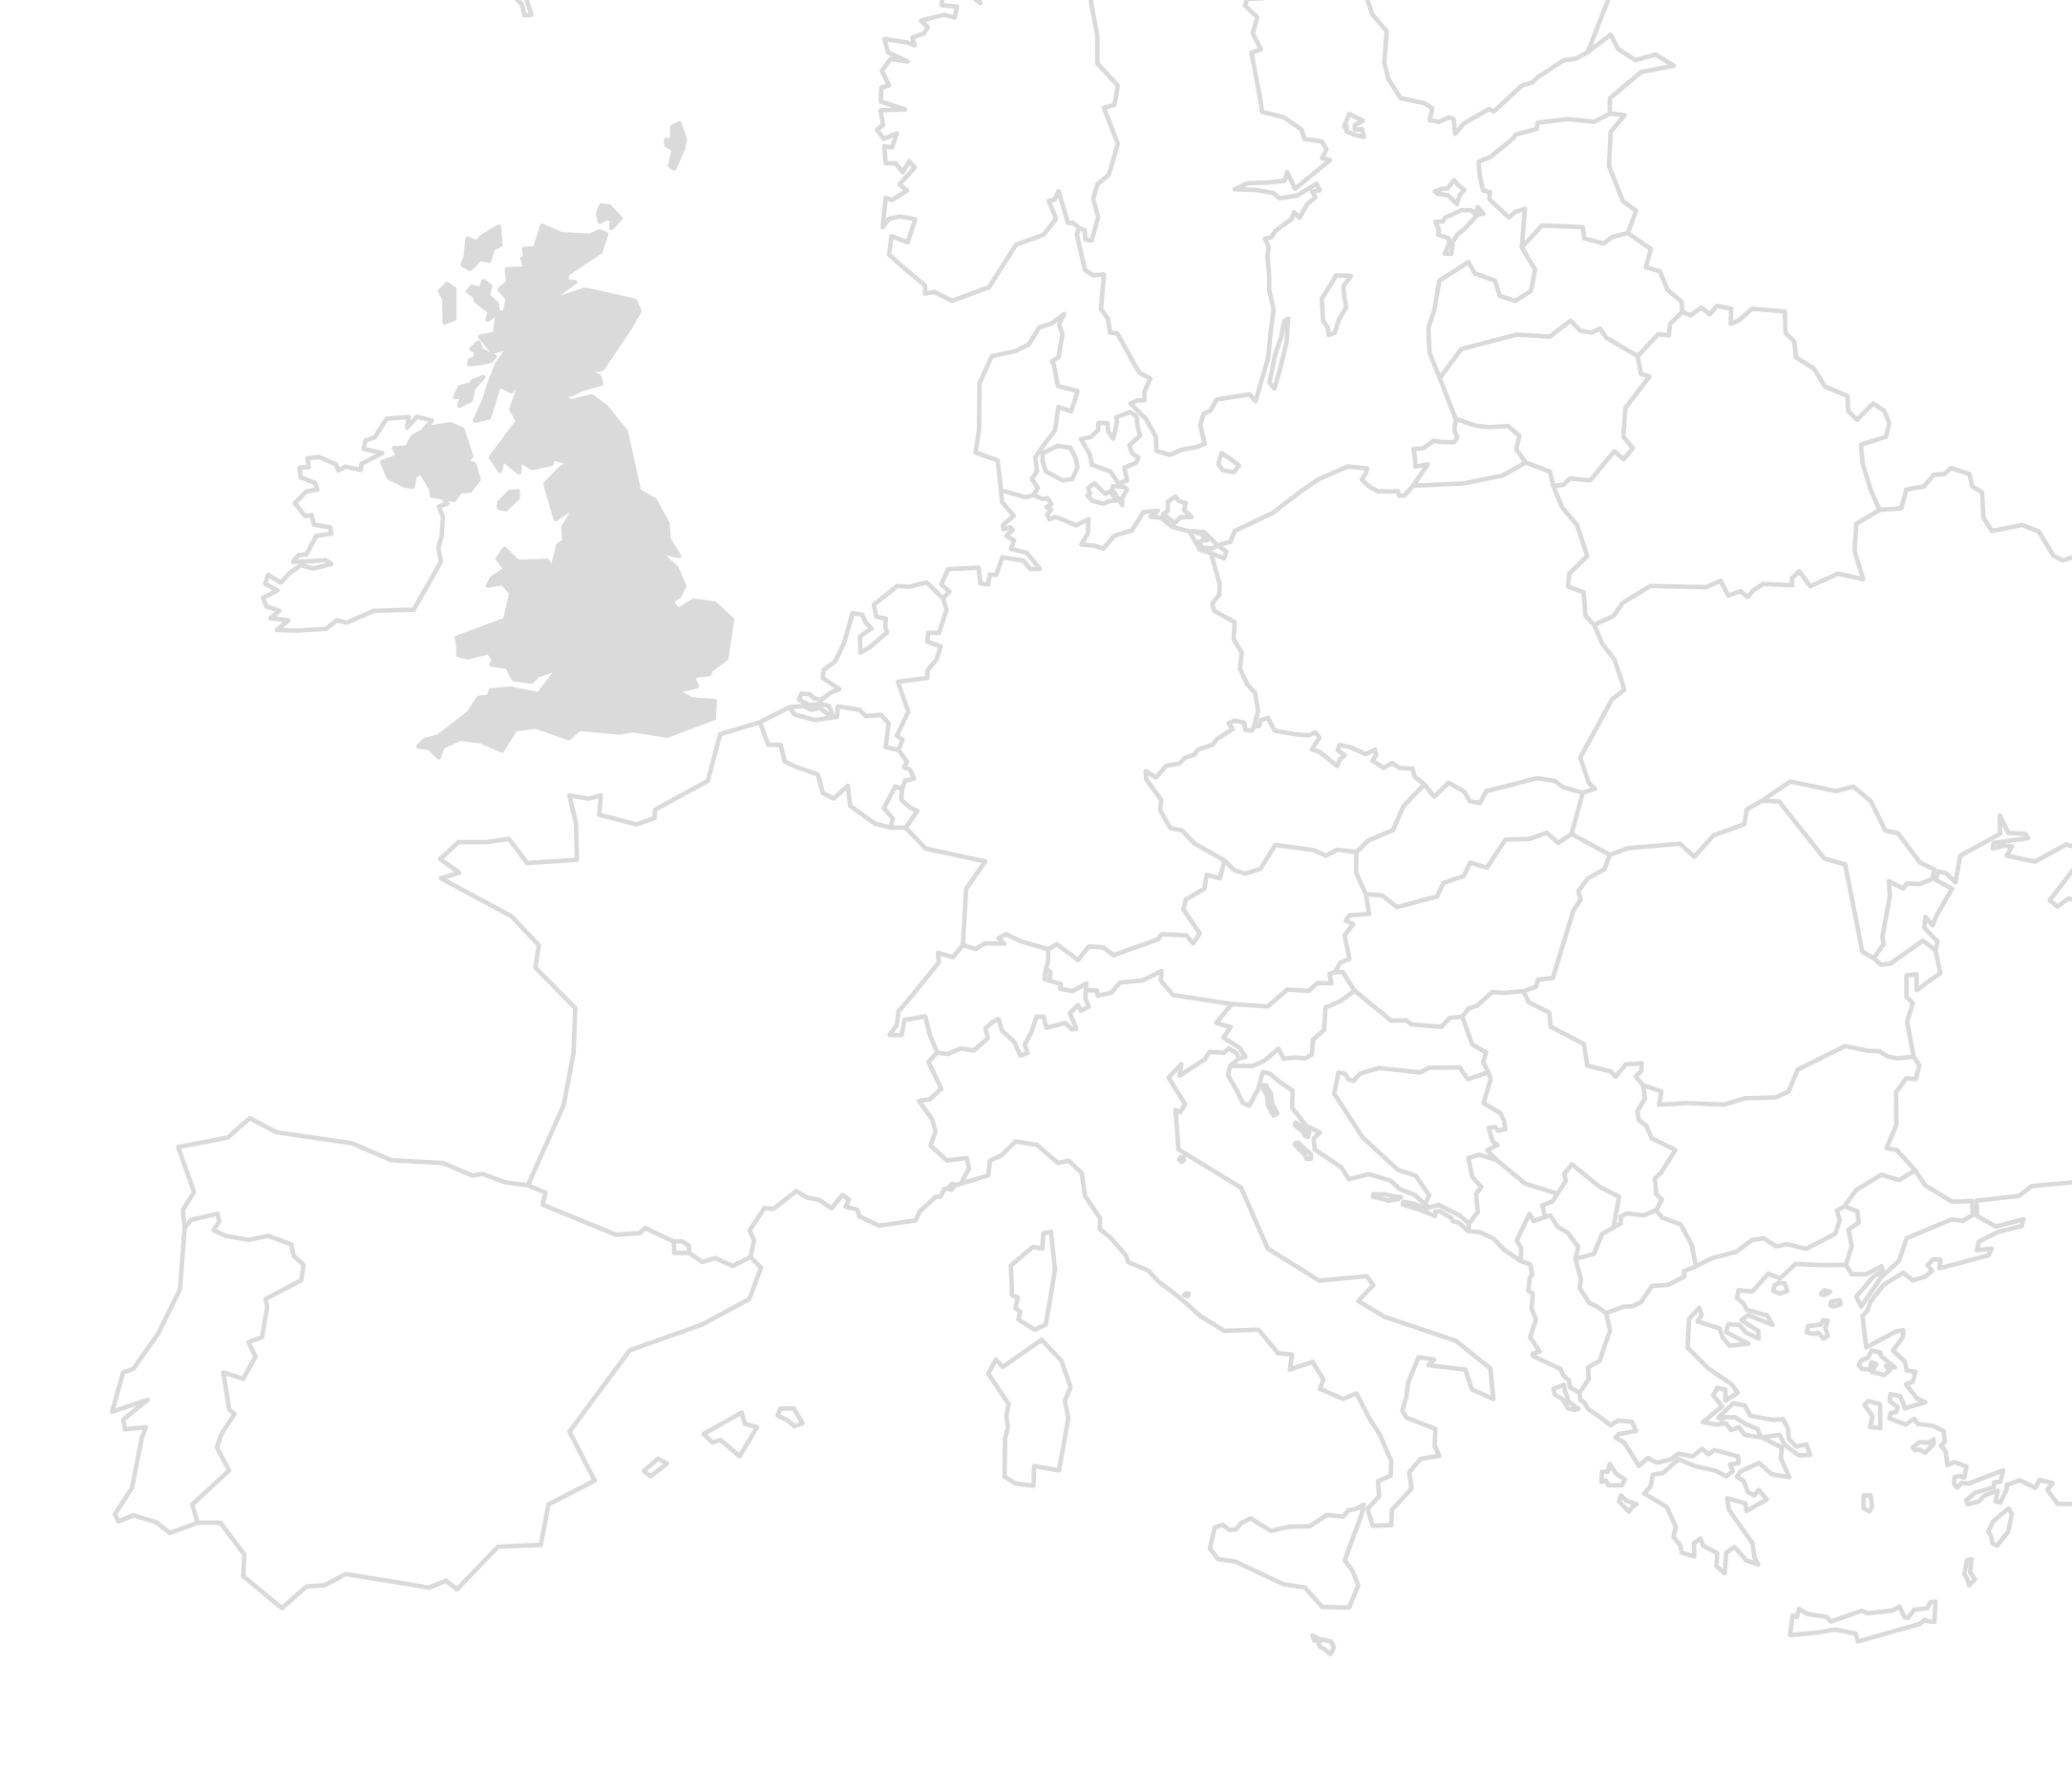 Europakarte. UK grau ausgefüllt als Visualisierung für den Standort des Bauprojektes.